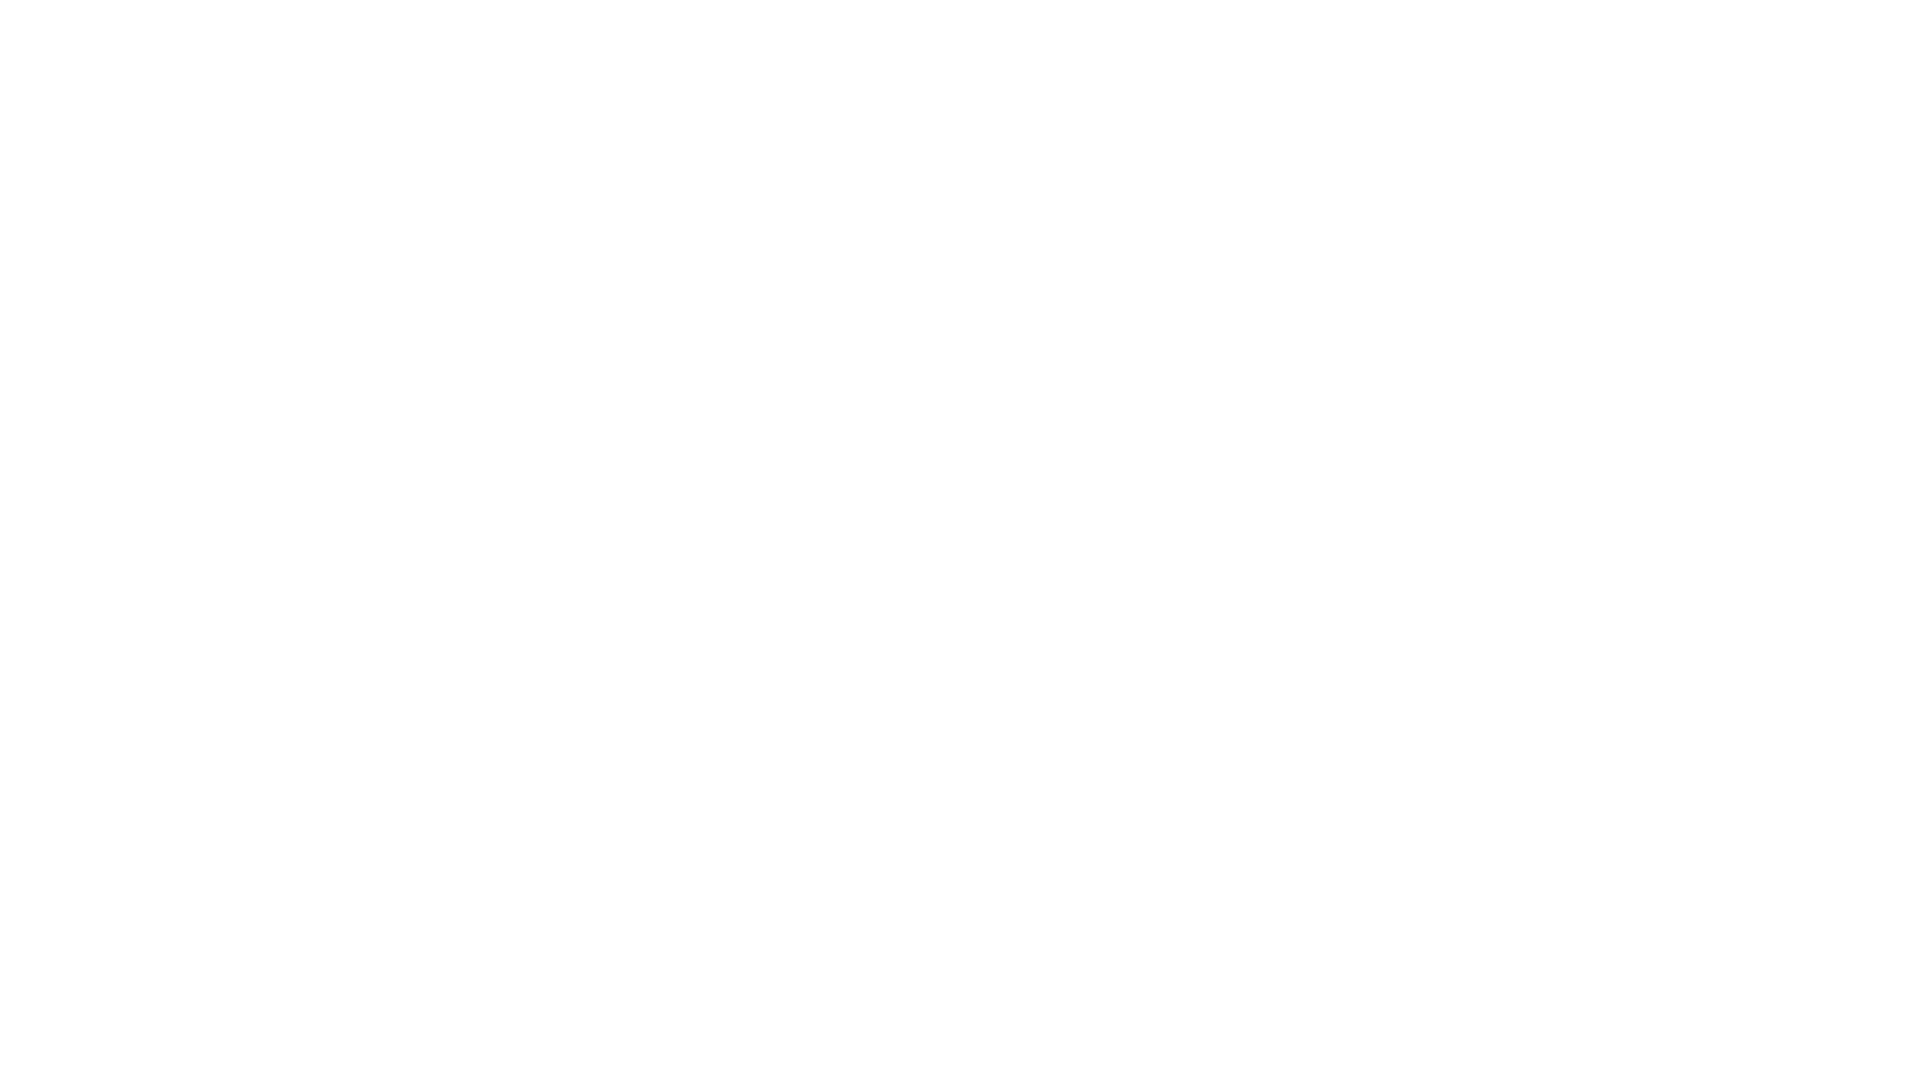 SmPaneli | Türkiye'nin En Ucuz Ana Sağlayıcı Paneli | Smm Panel